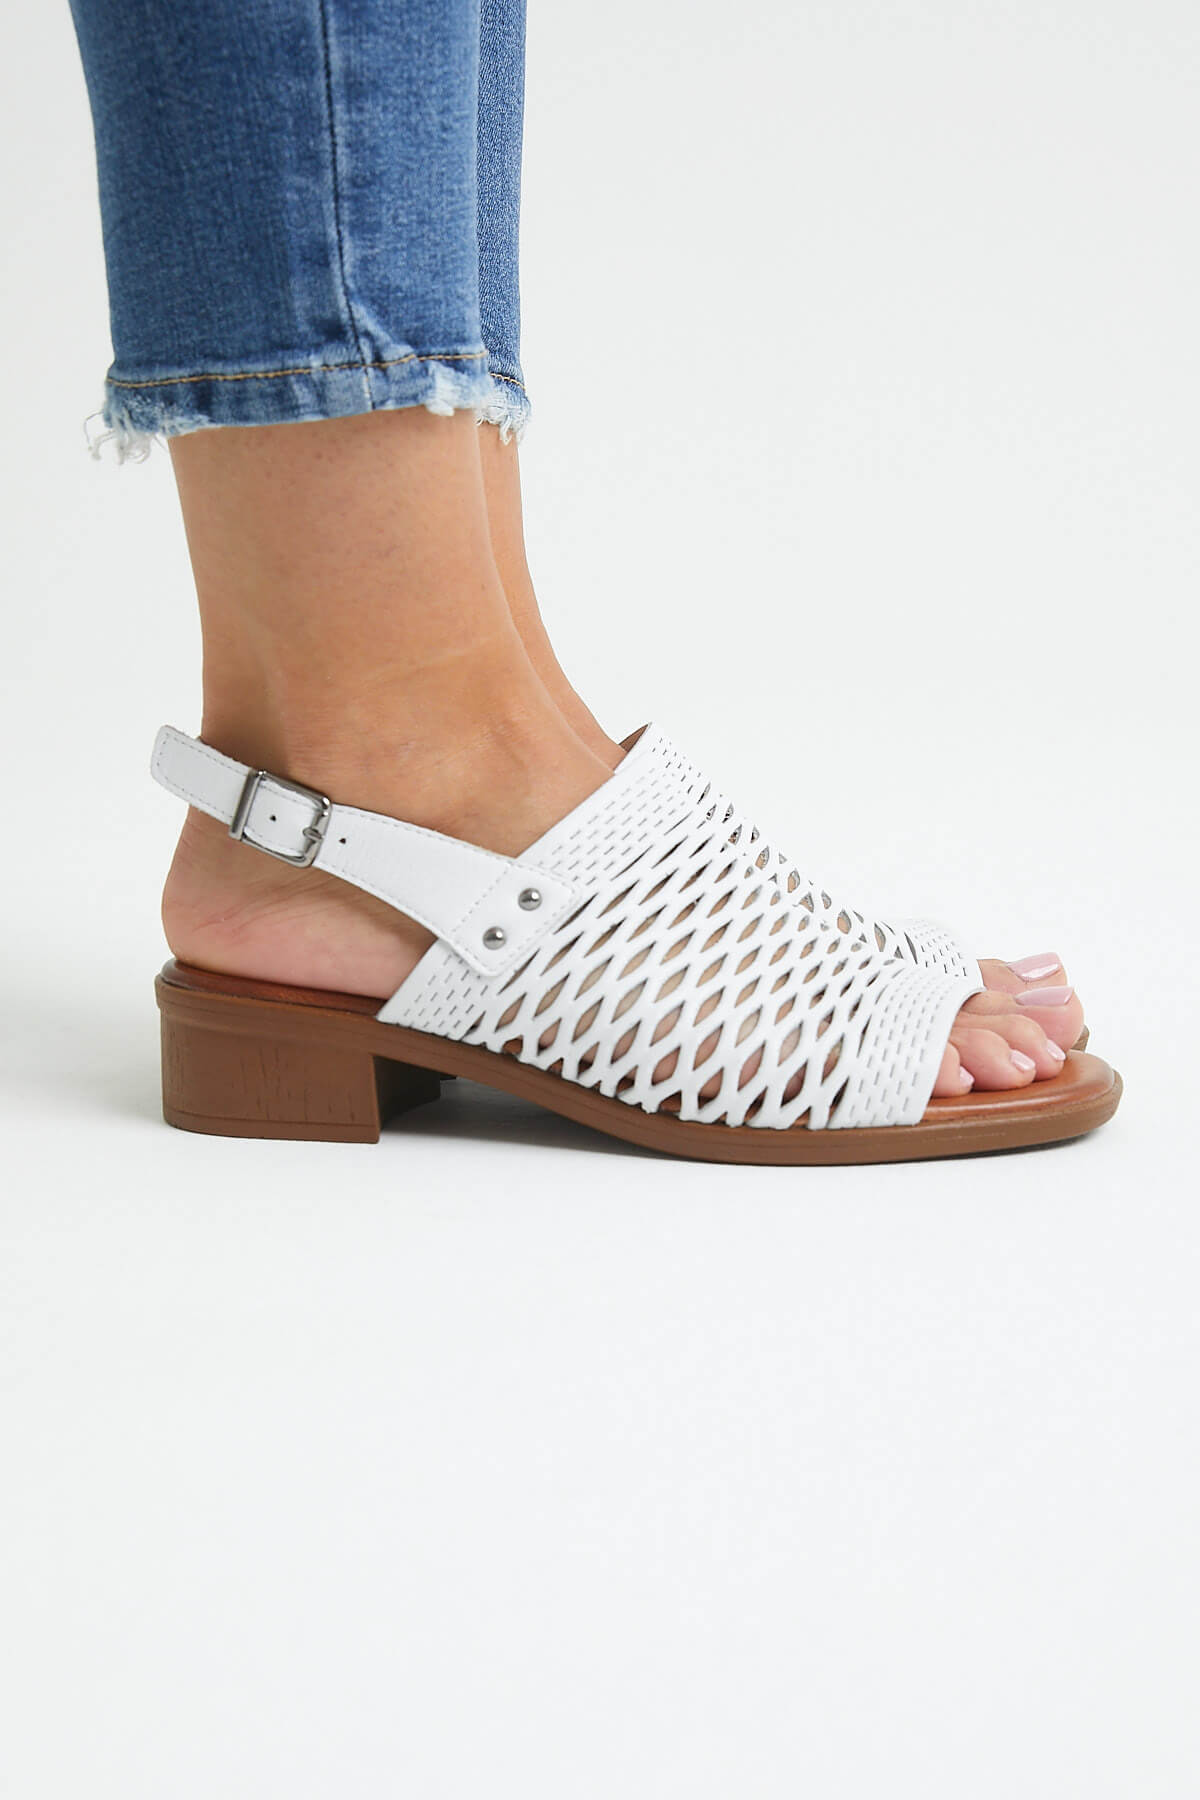 Kadın Topuklu Deri Sandalet Beyaz 21986001 - Thumbnail